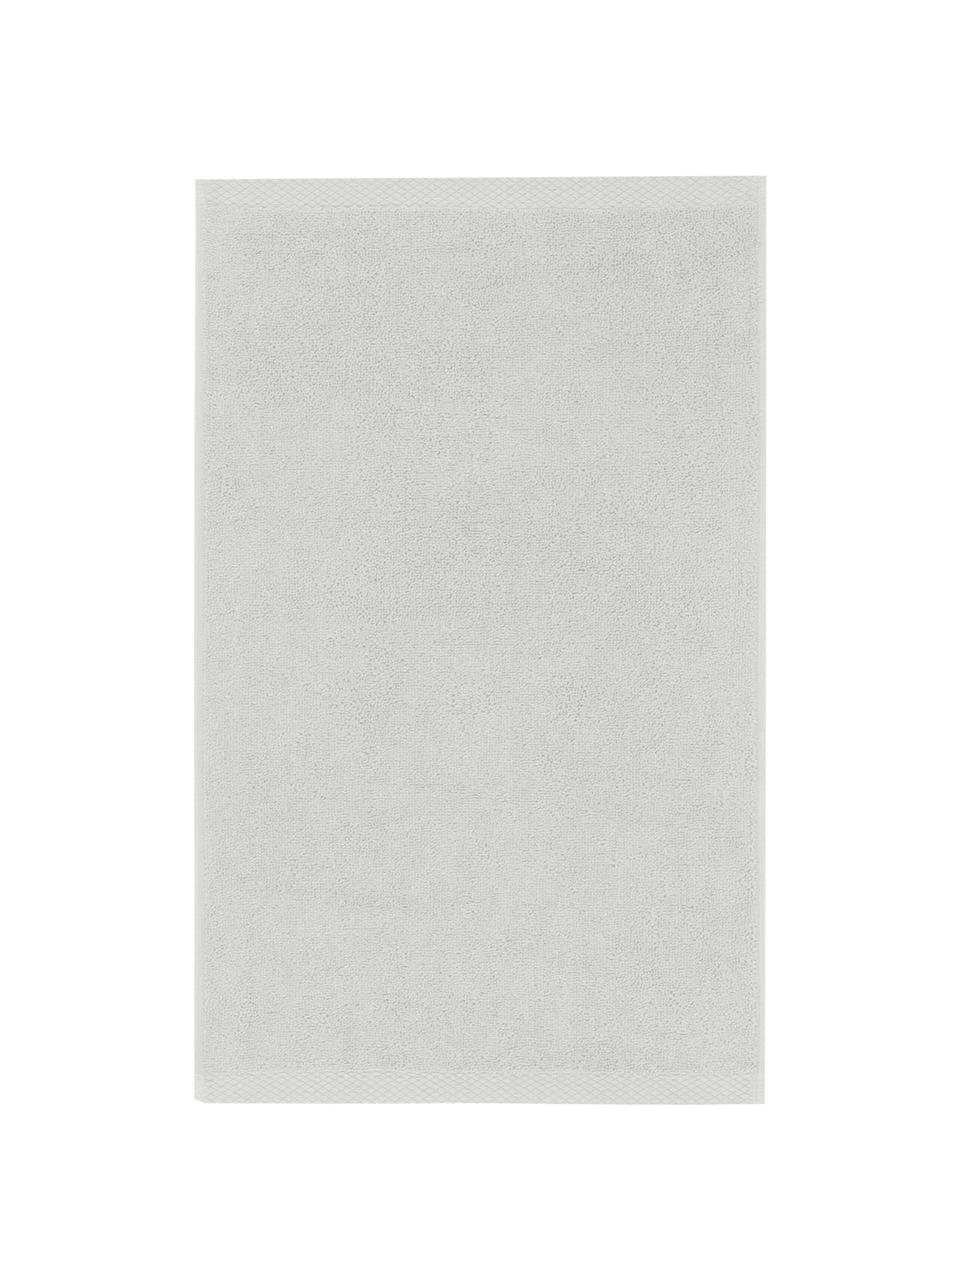 Einfarbiges Handtuch Comfort, verschiedene Größen, Hellgrau, Handtuch, B 50 x L 100 cm, 2 Stück